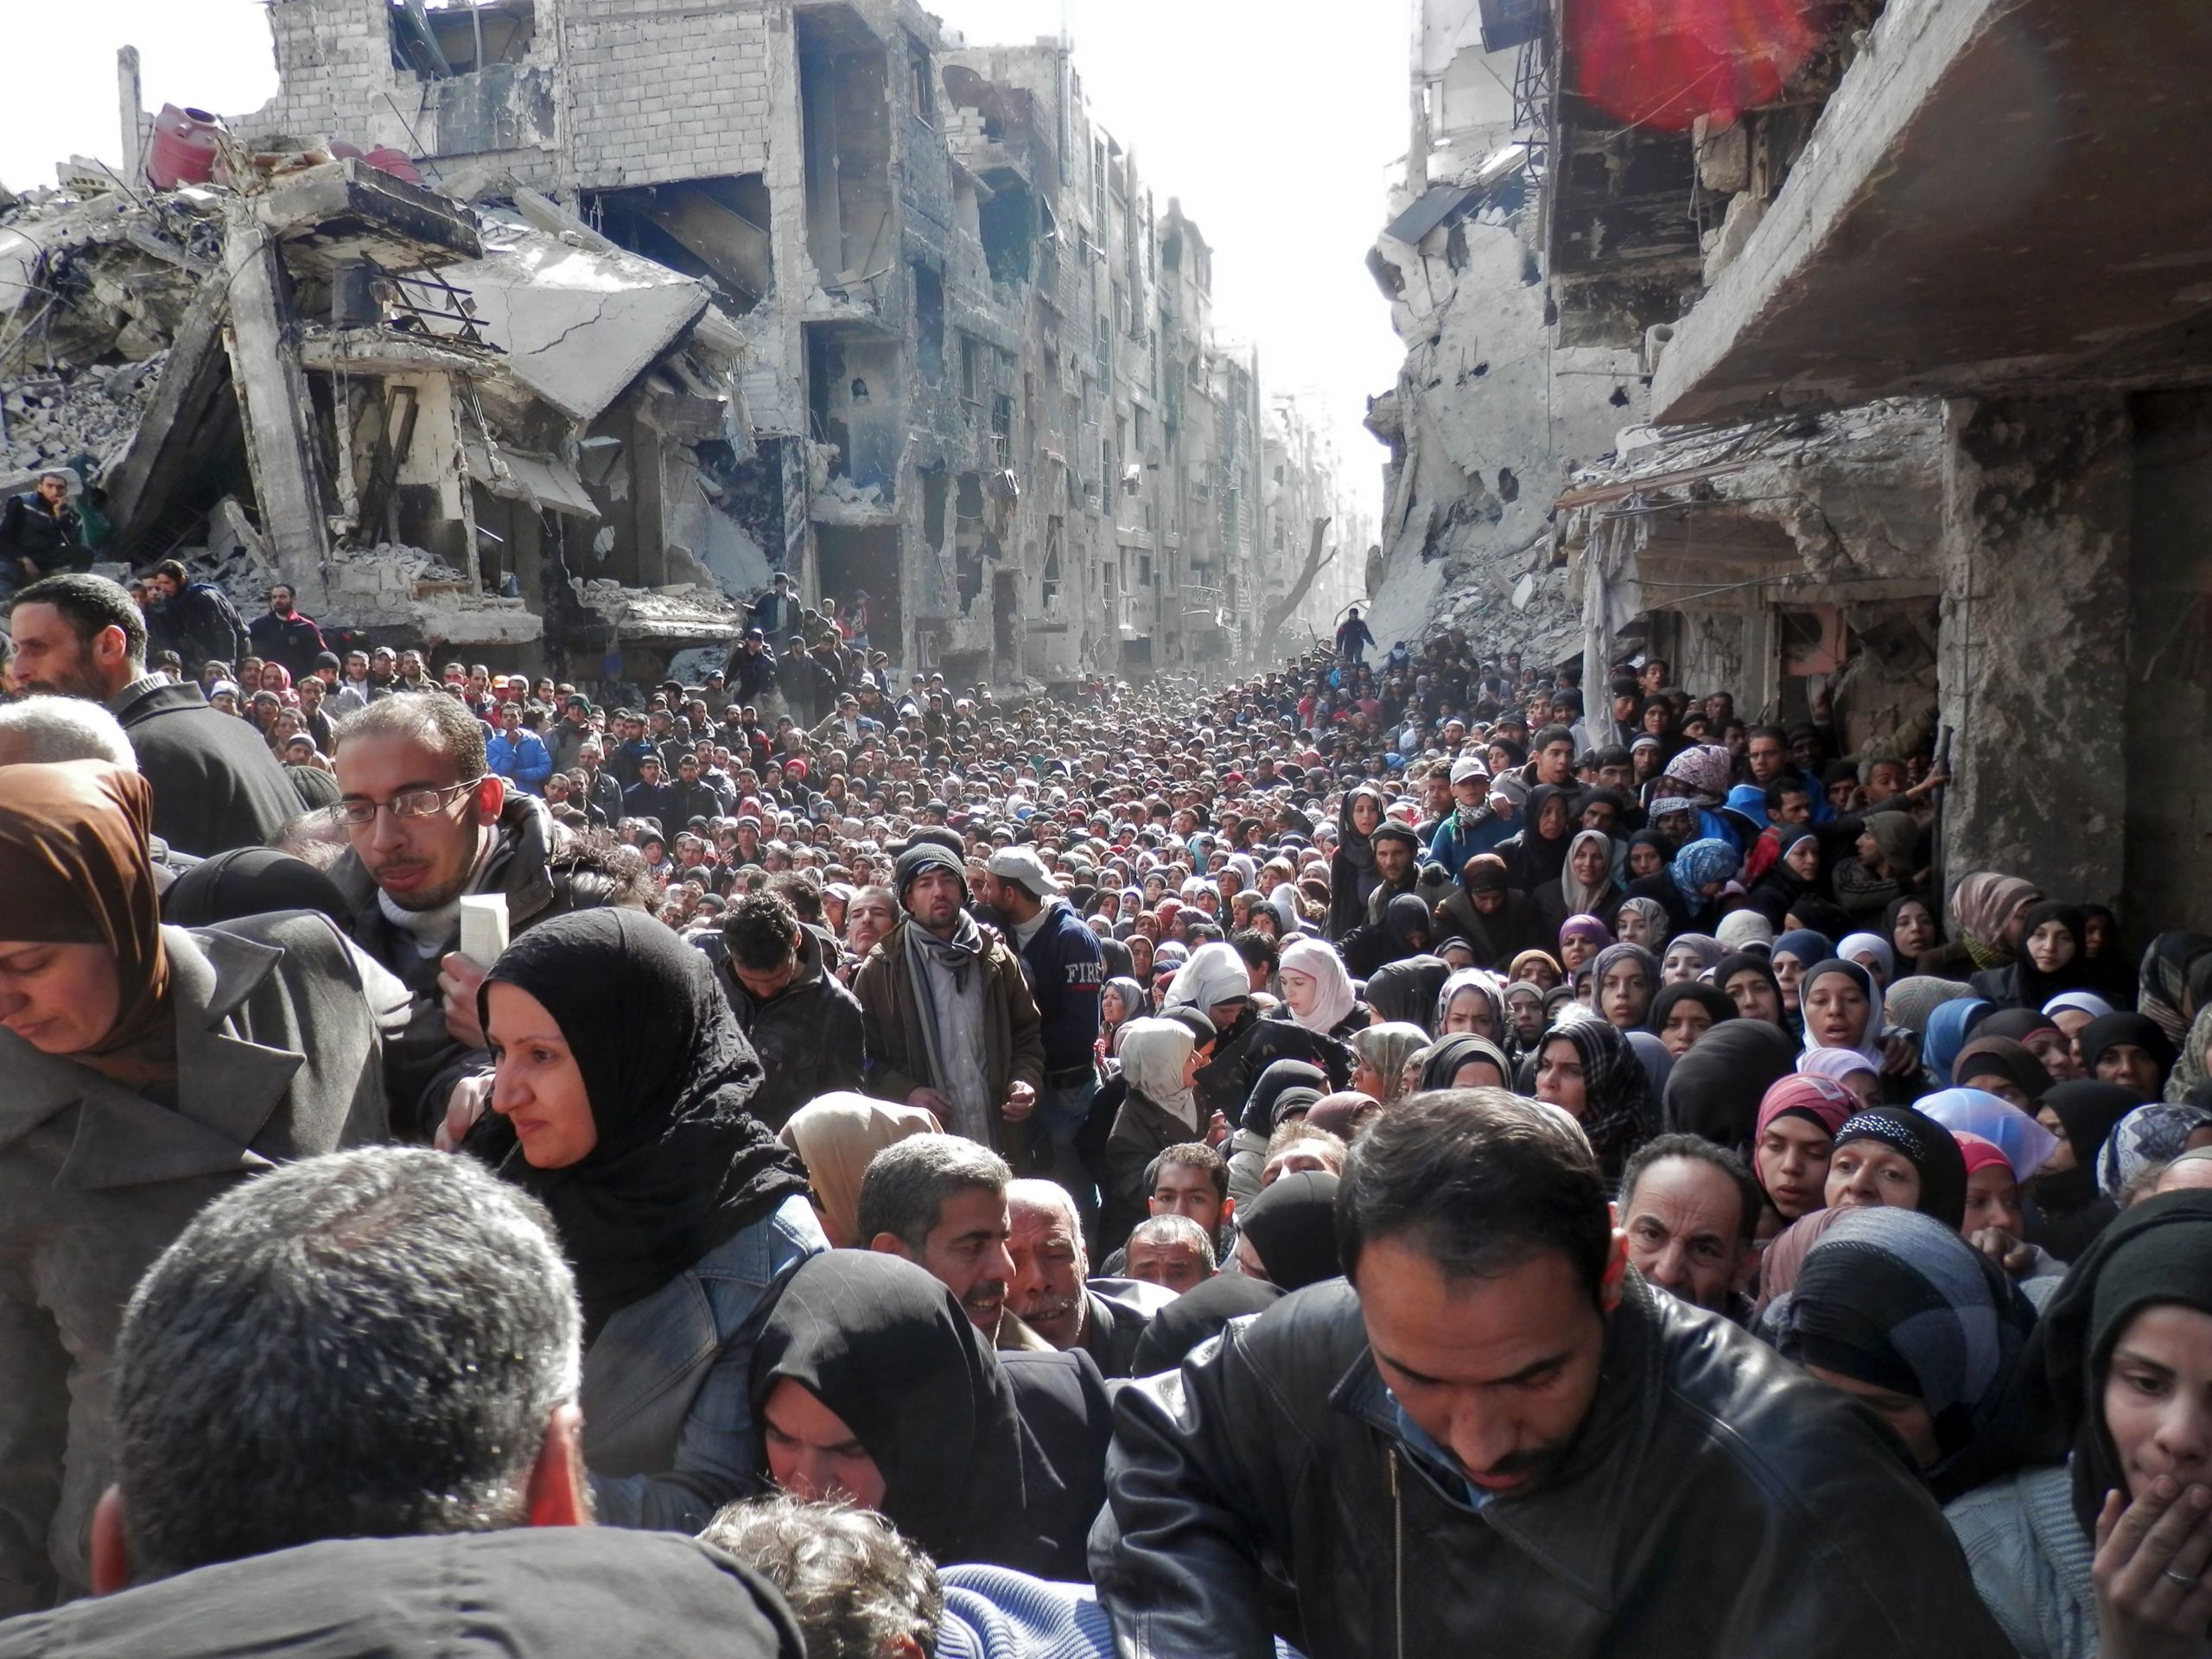 لاجئون فلسطينيون ينتظرون المساعدات في مخيم اليرموك- 2014 (Images Getty)